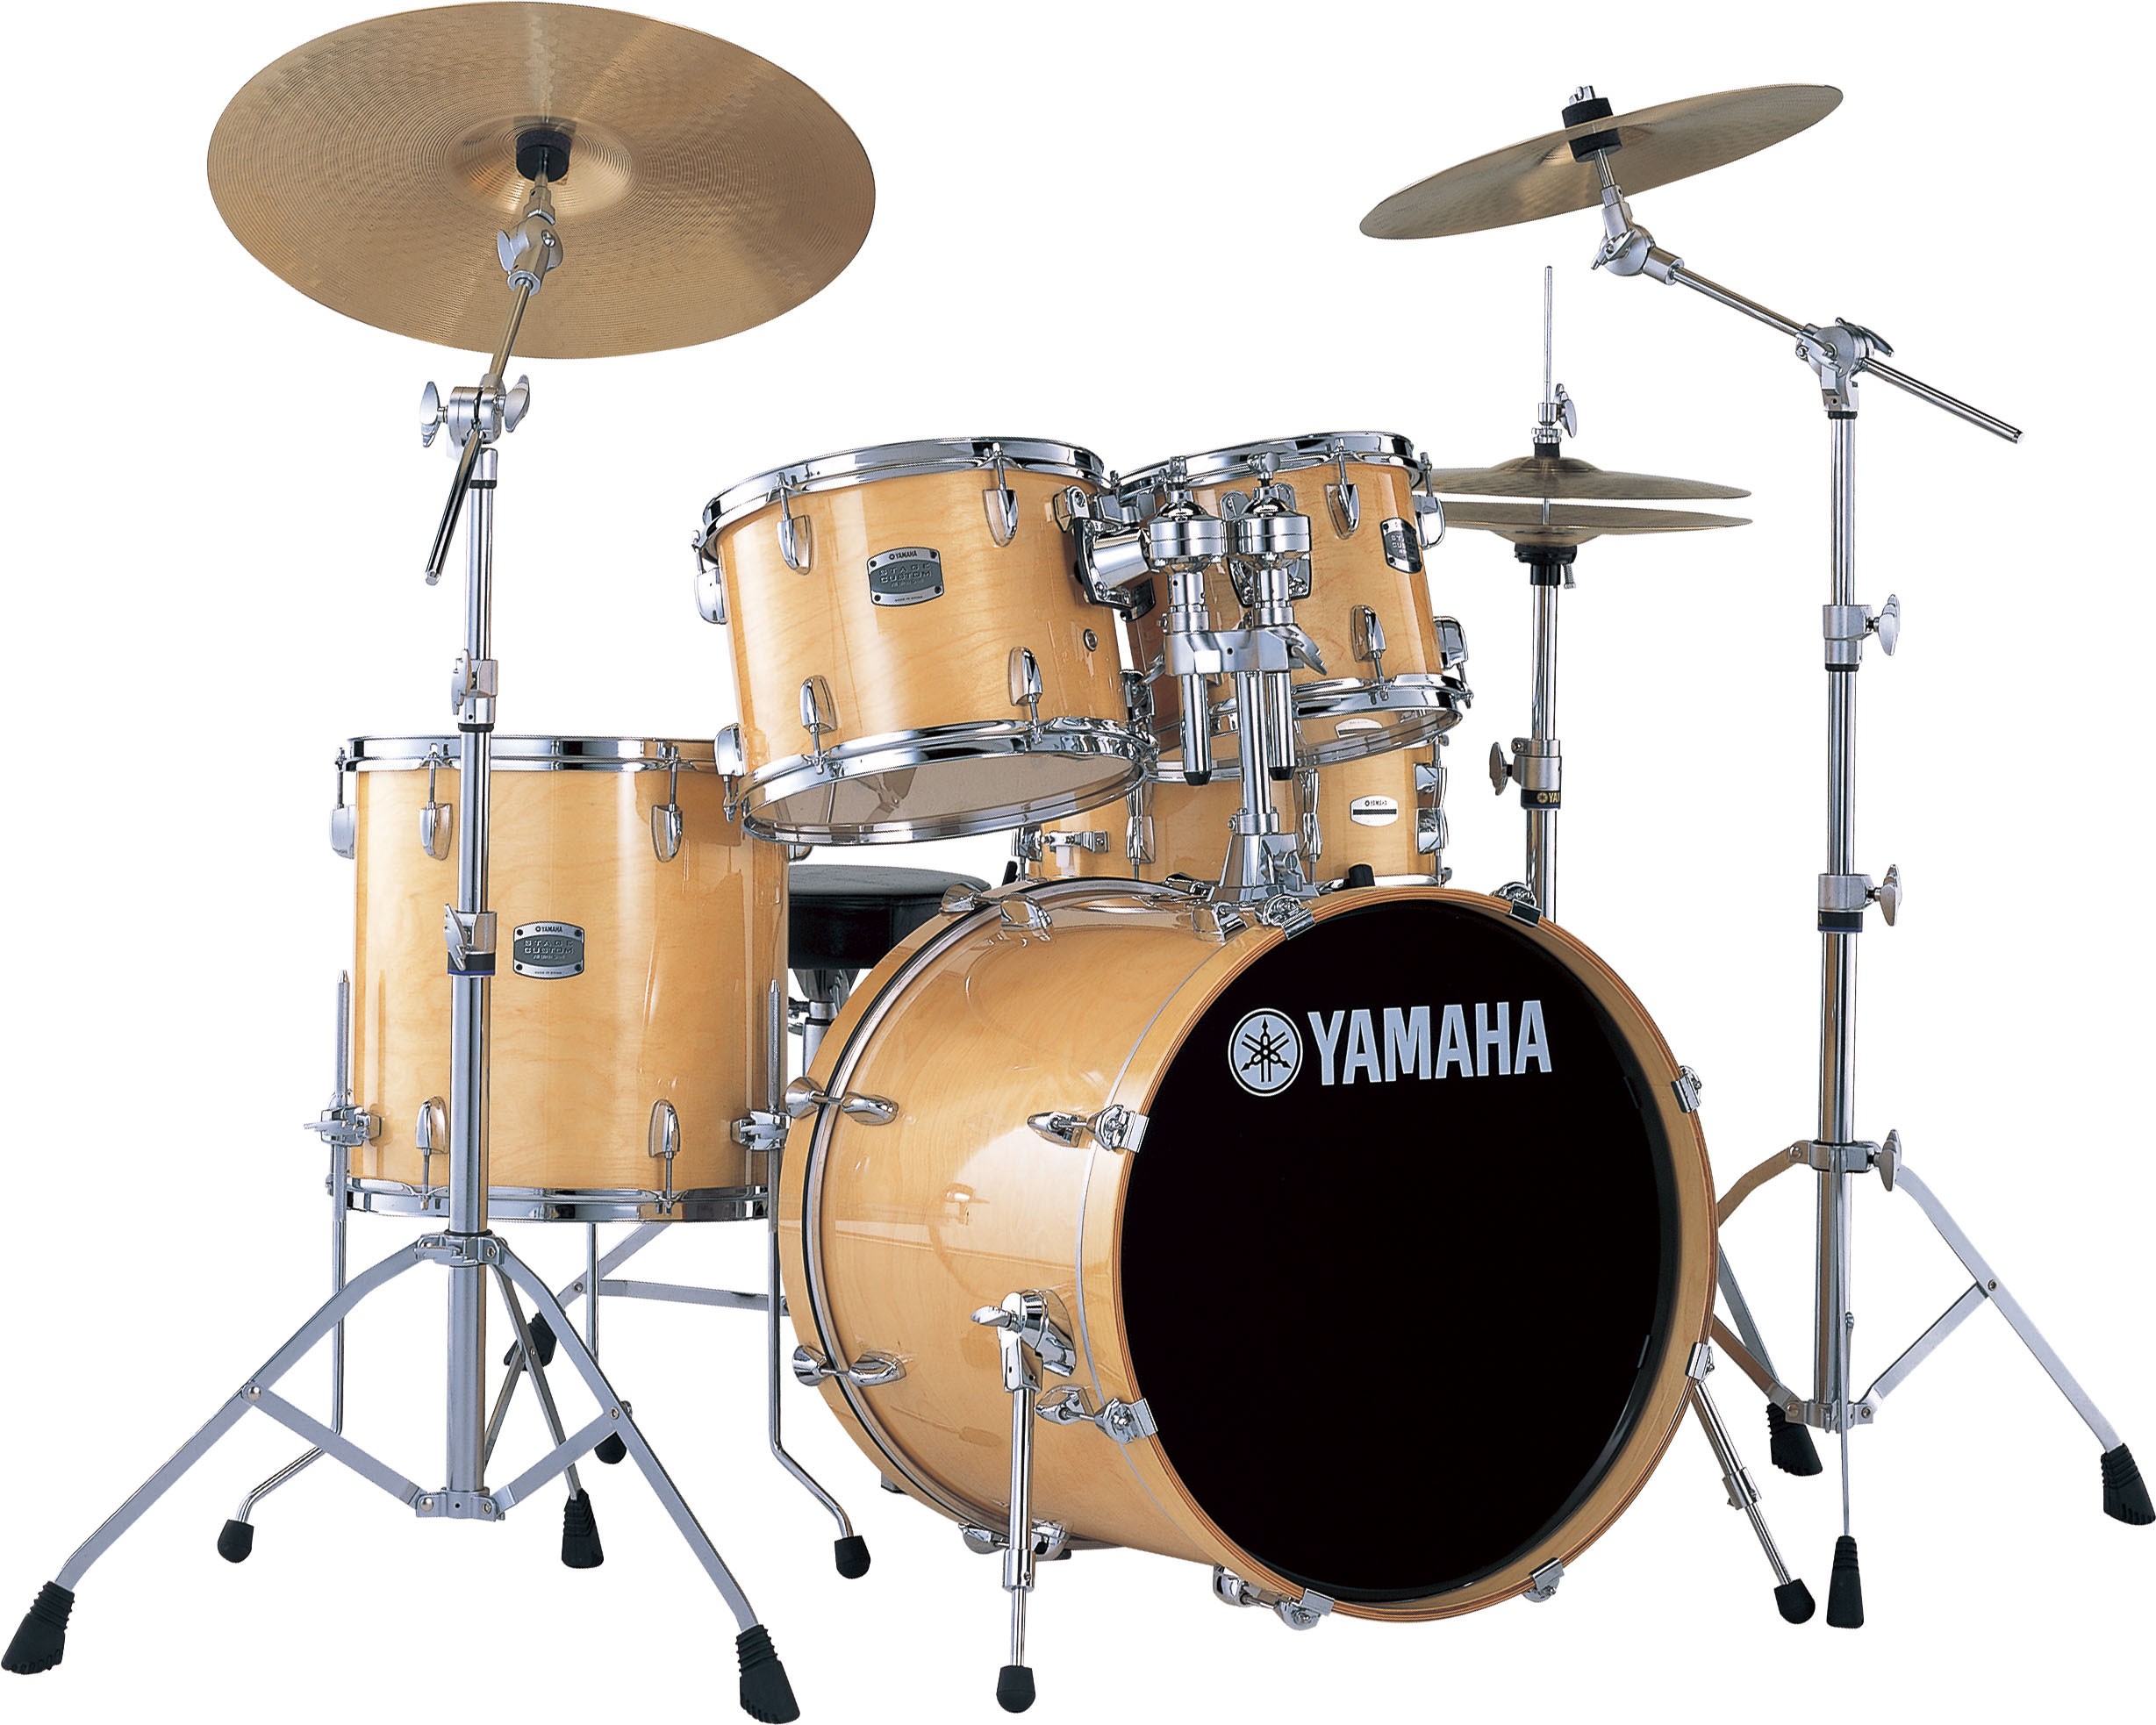 yamaha birch custom fusion drum kit